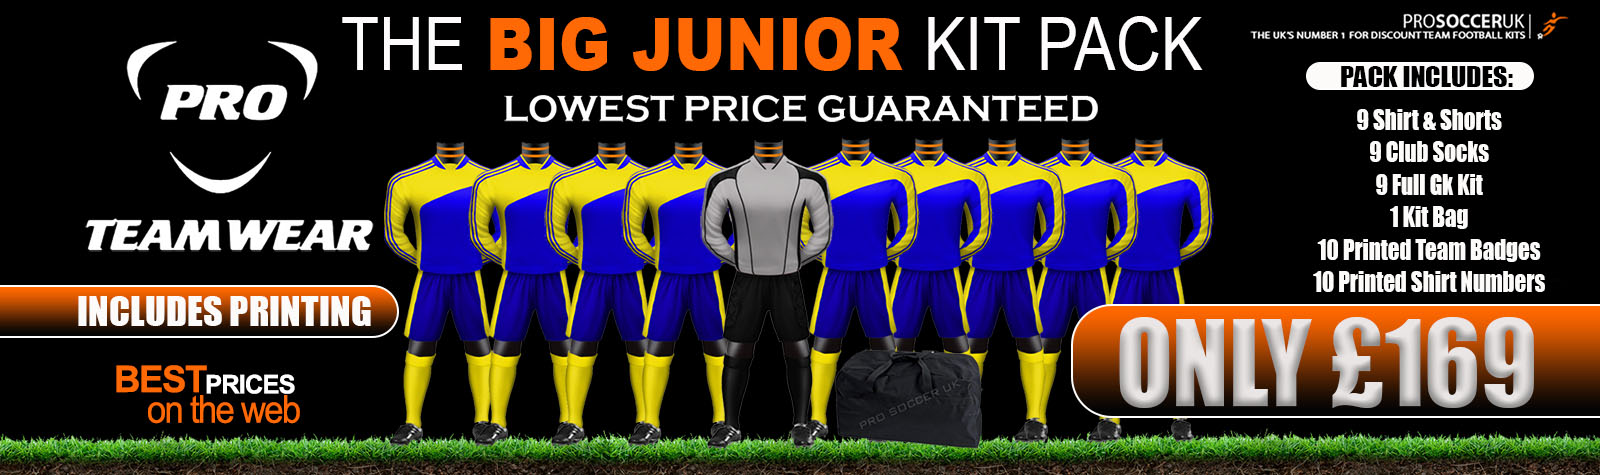 School kit deals - School football team kits